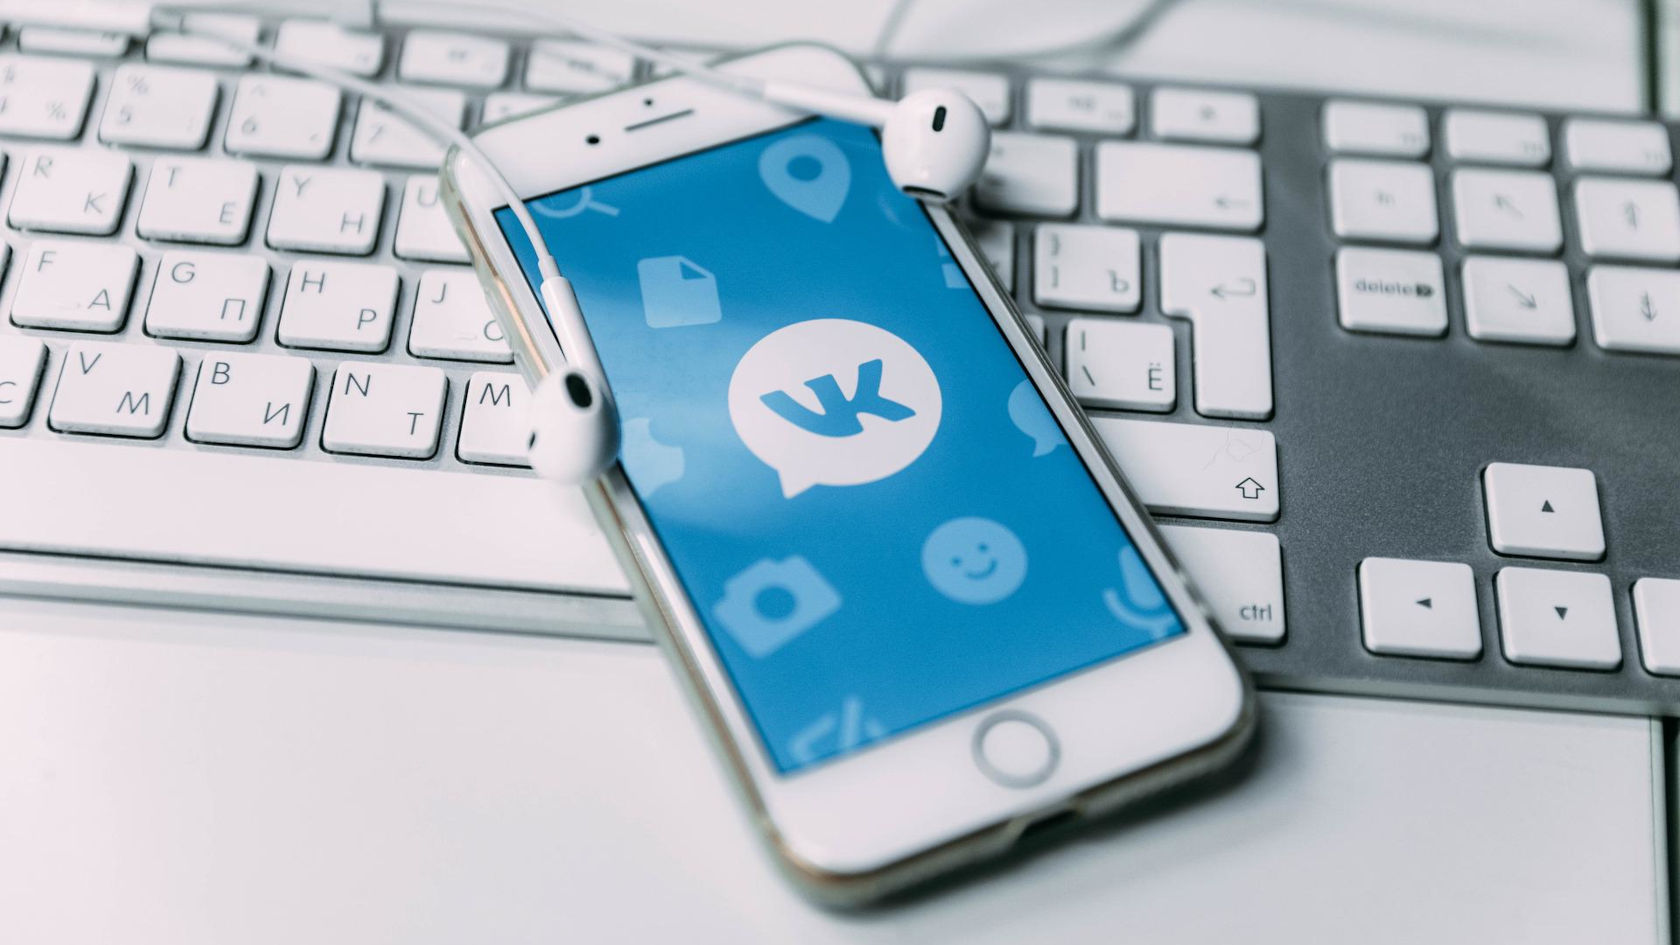 Эффективная лидогенерация ВКонтакте.
Повышаем лояльность клиентов и экономим на рассылках с помощью уведомлений во ВКонтакте и Одноклассниках
